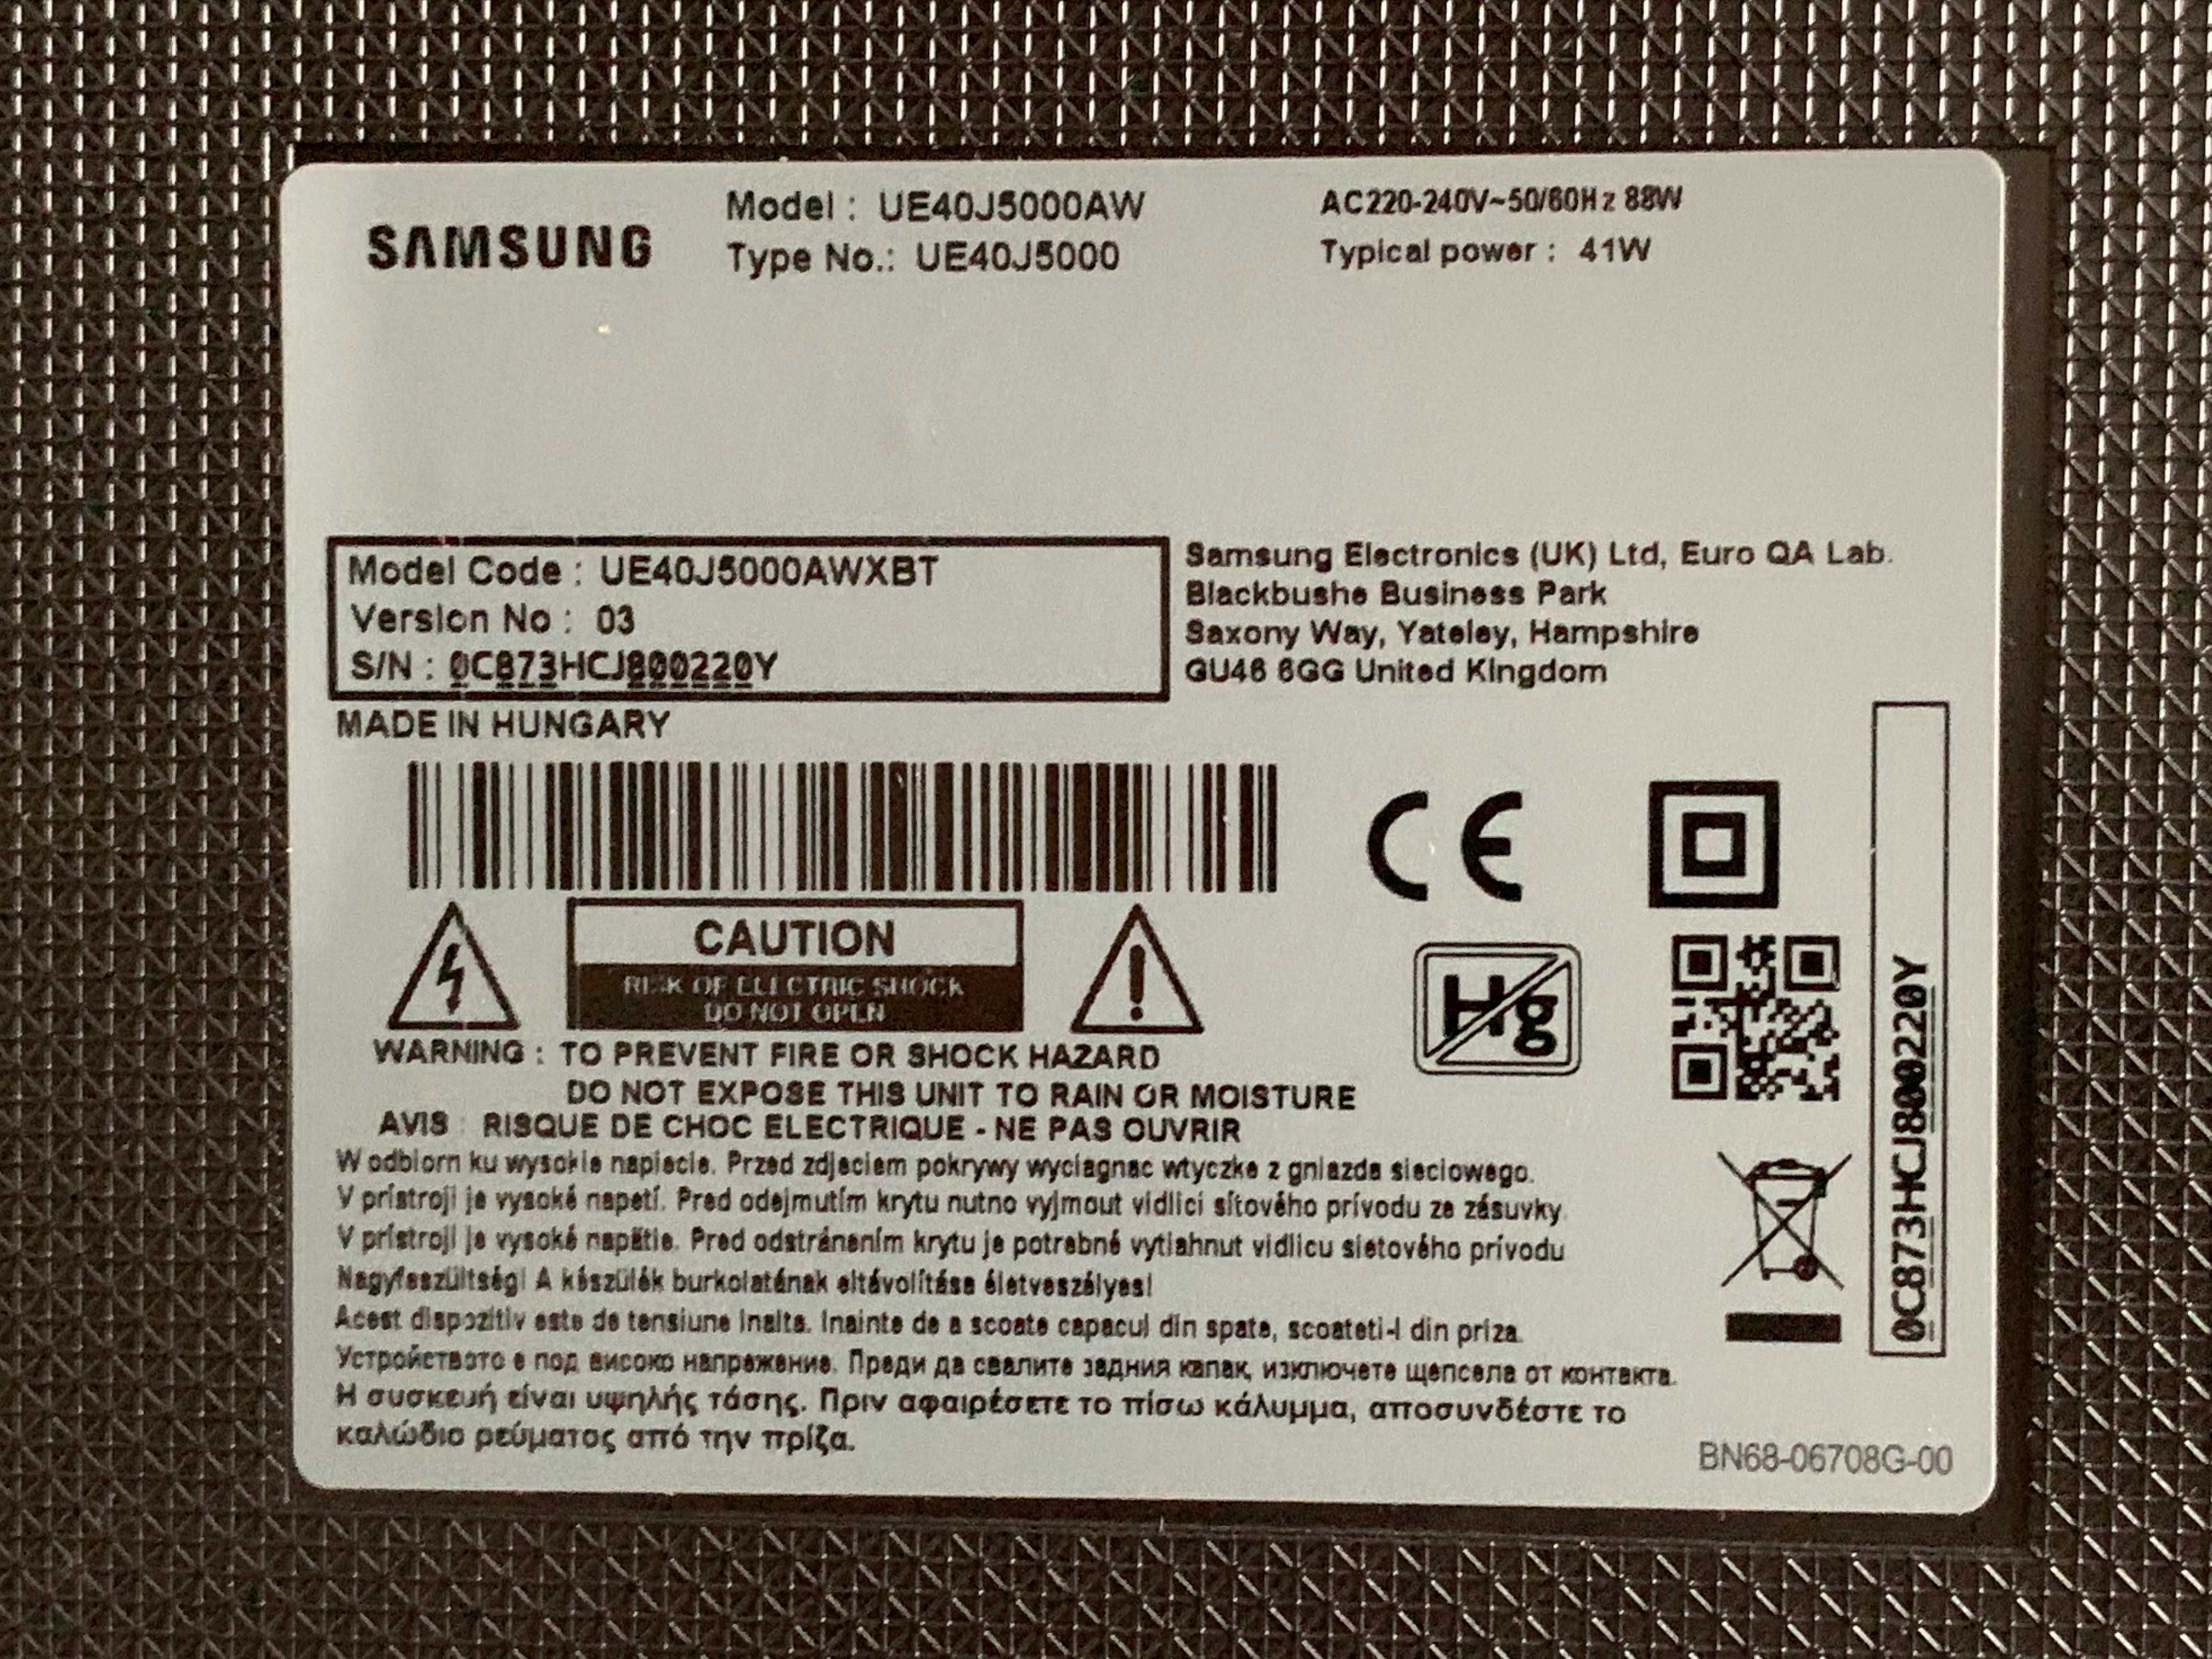 Samsung UE40J5000AW